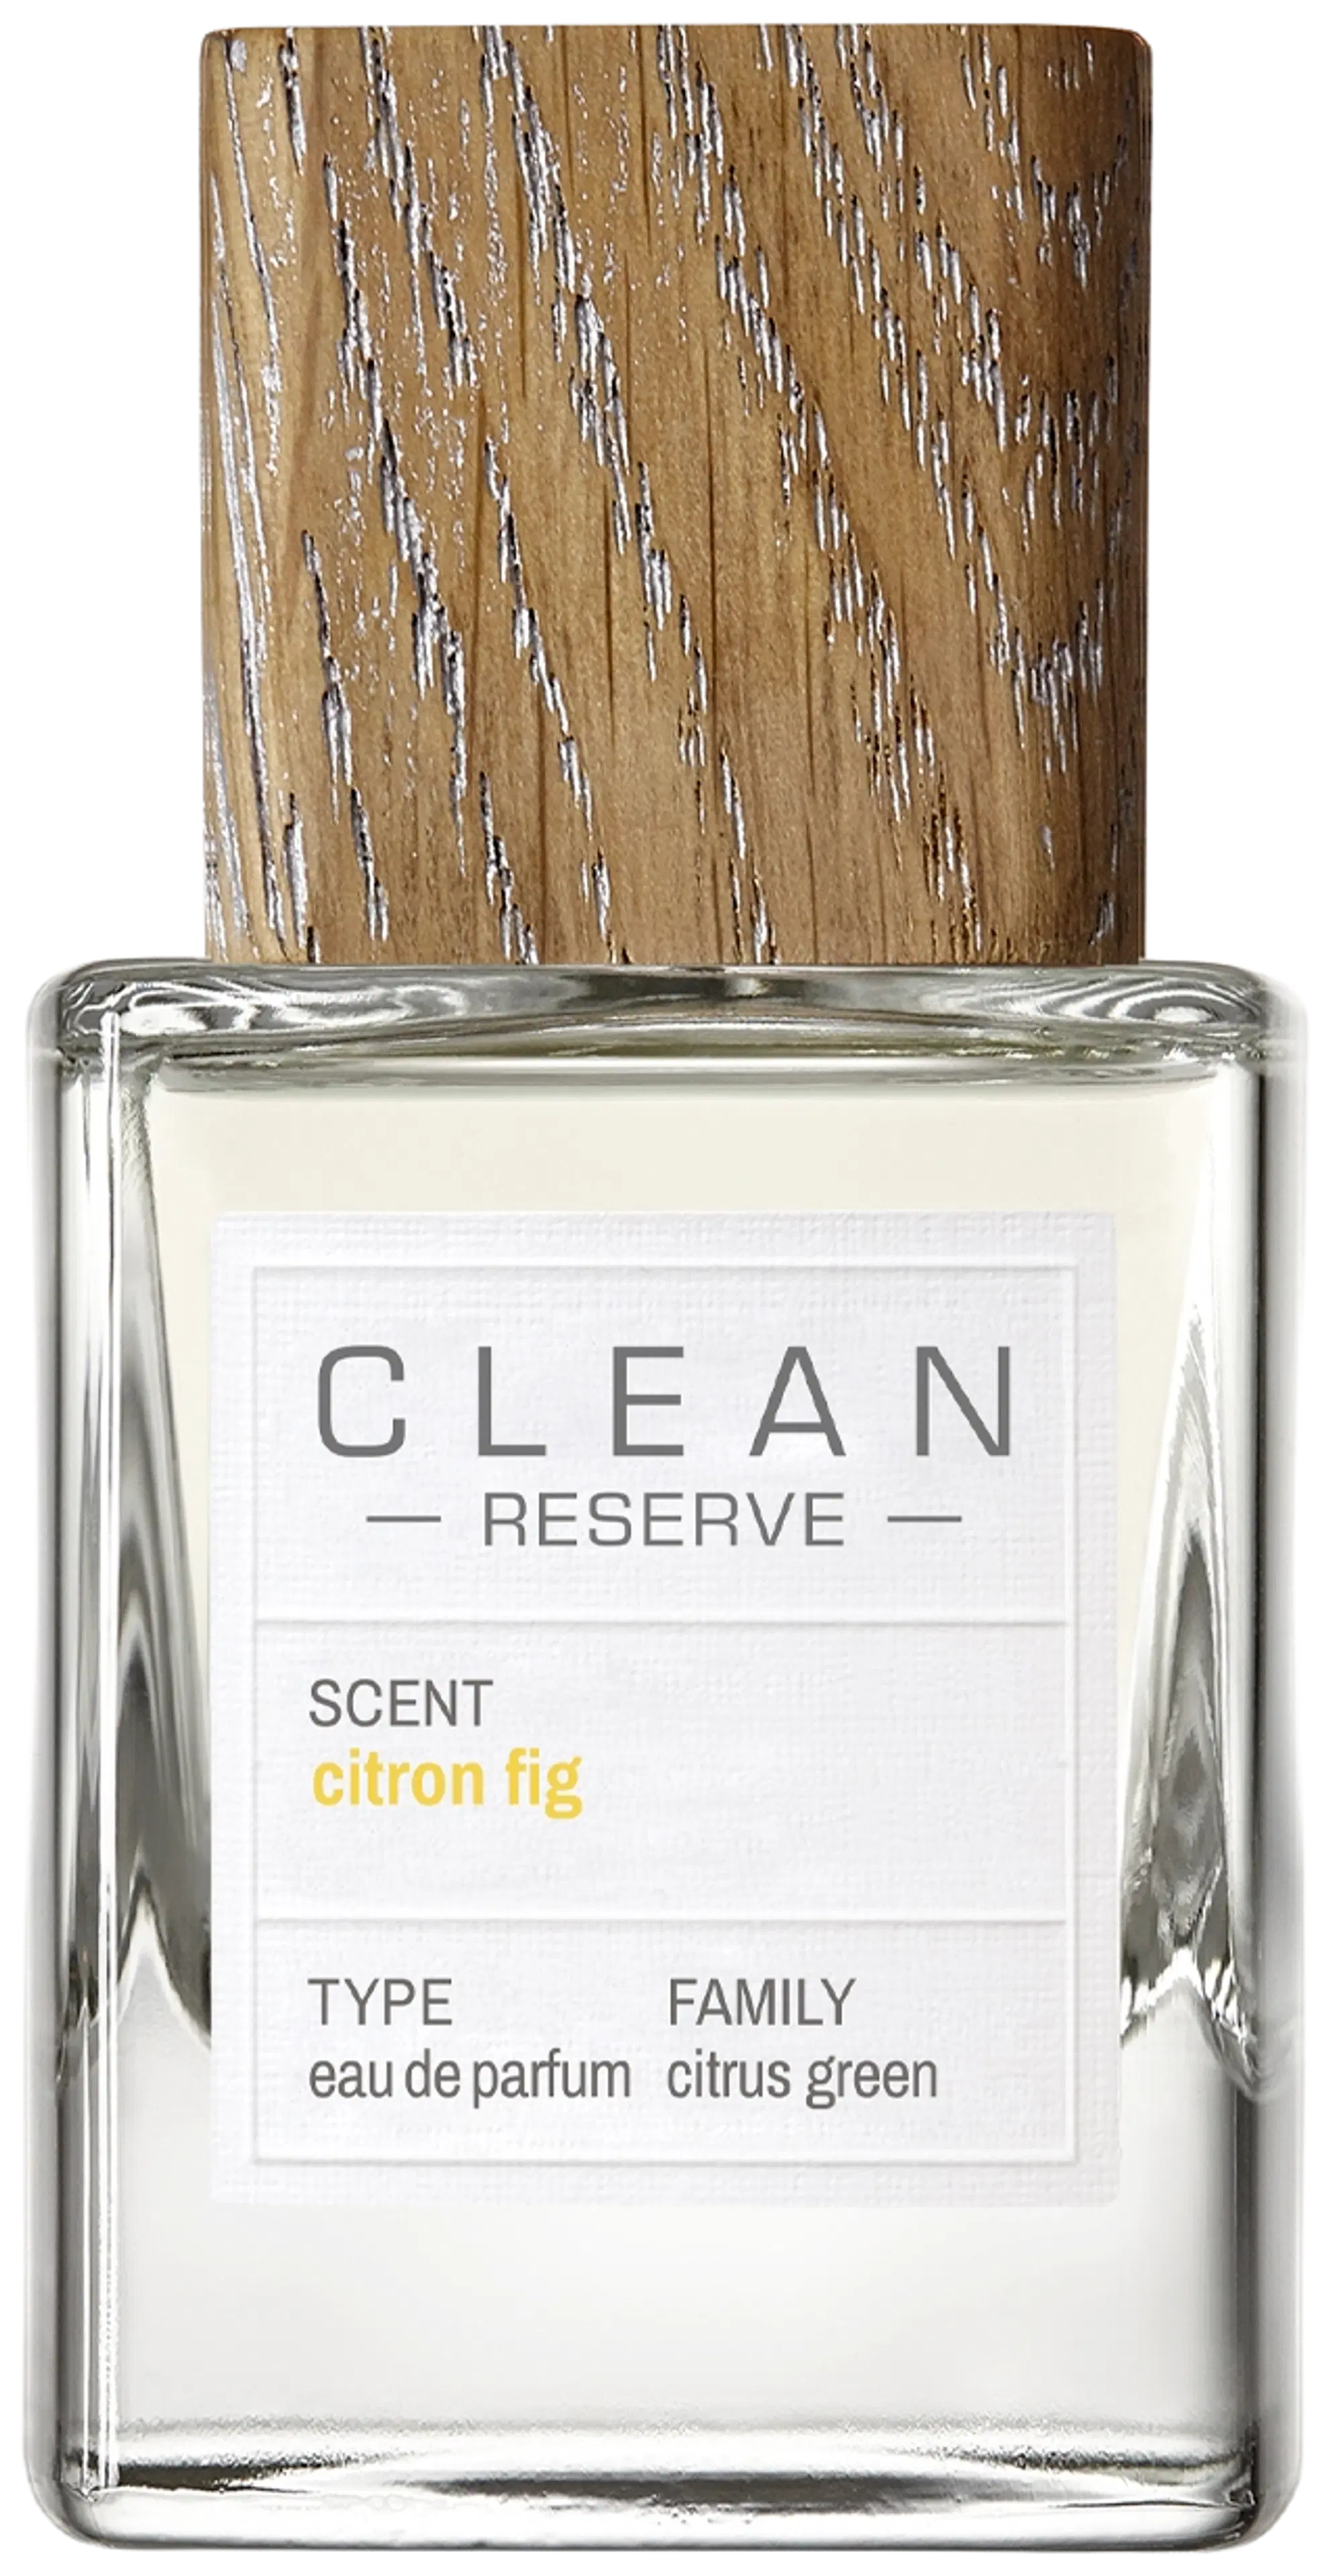 CLEAN Reserve Citron Fig Eau de Parfum 30 ml